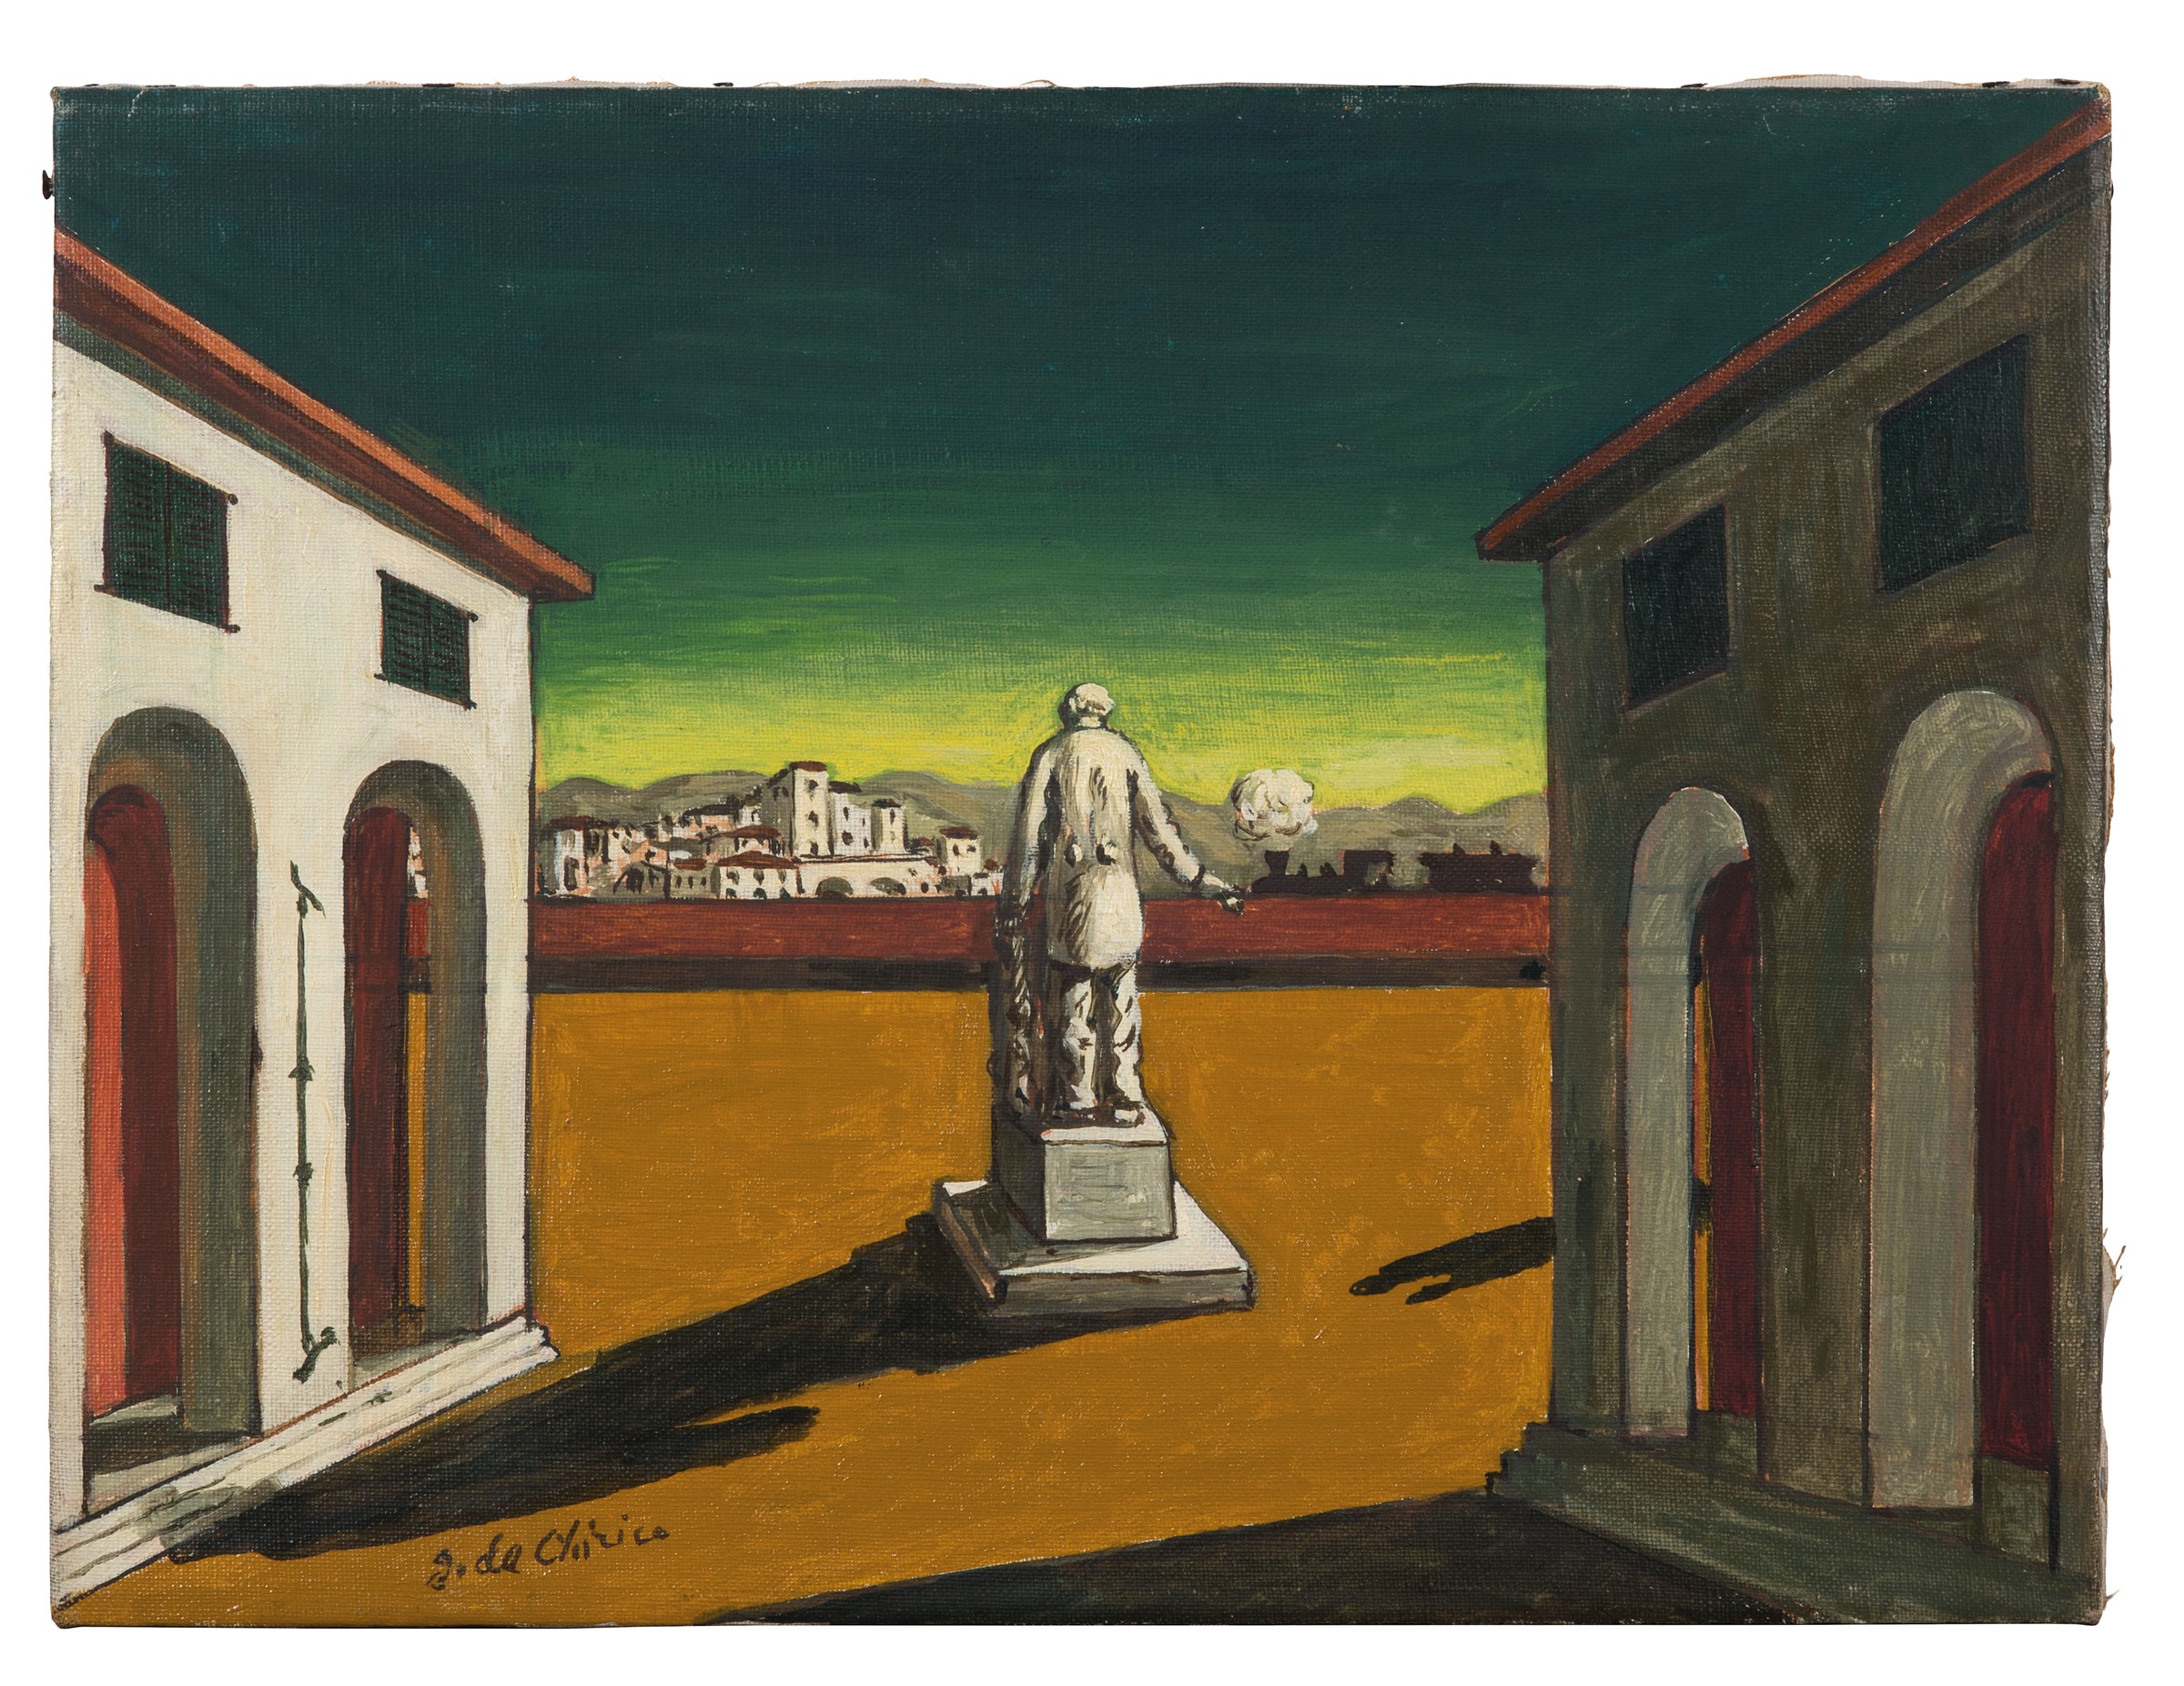 LOTTO  231 - Giorgio De Chirico, Piazza d'Italia, fine anni ‘50. Olio su tela, cm 30x40. Stima: EUR 90.000,00 - 120.000,00